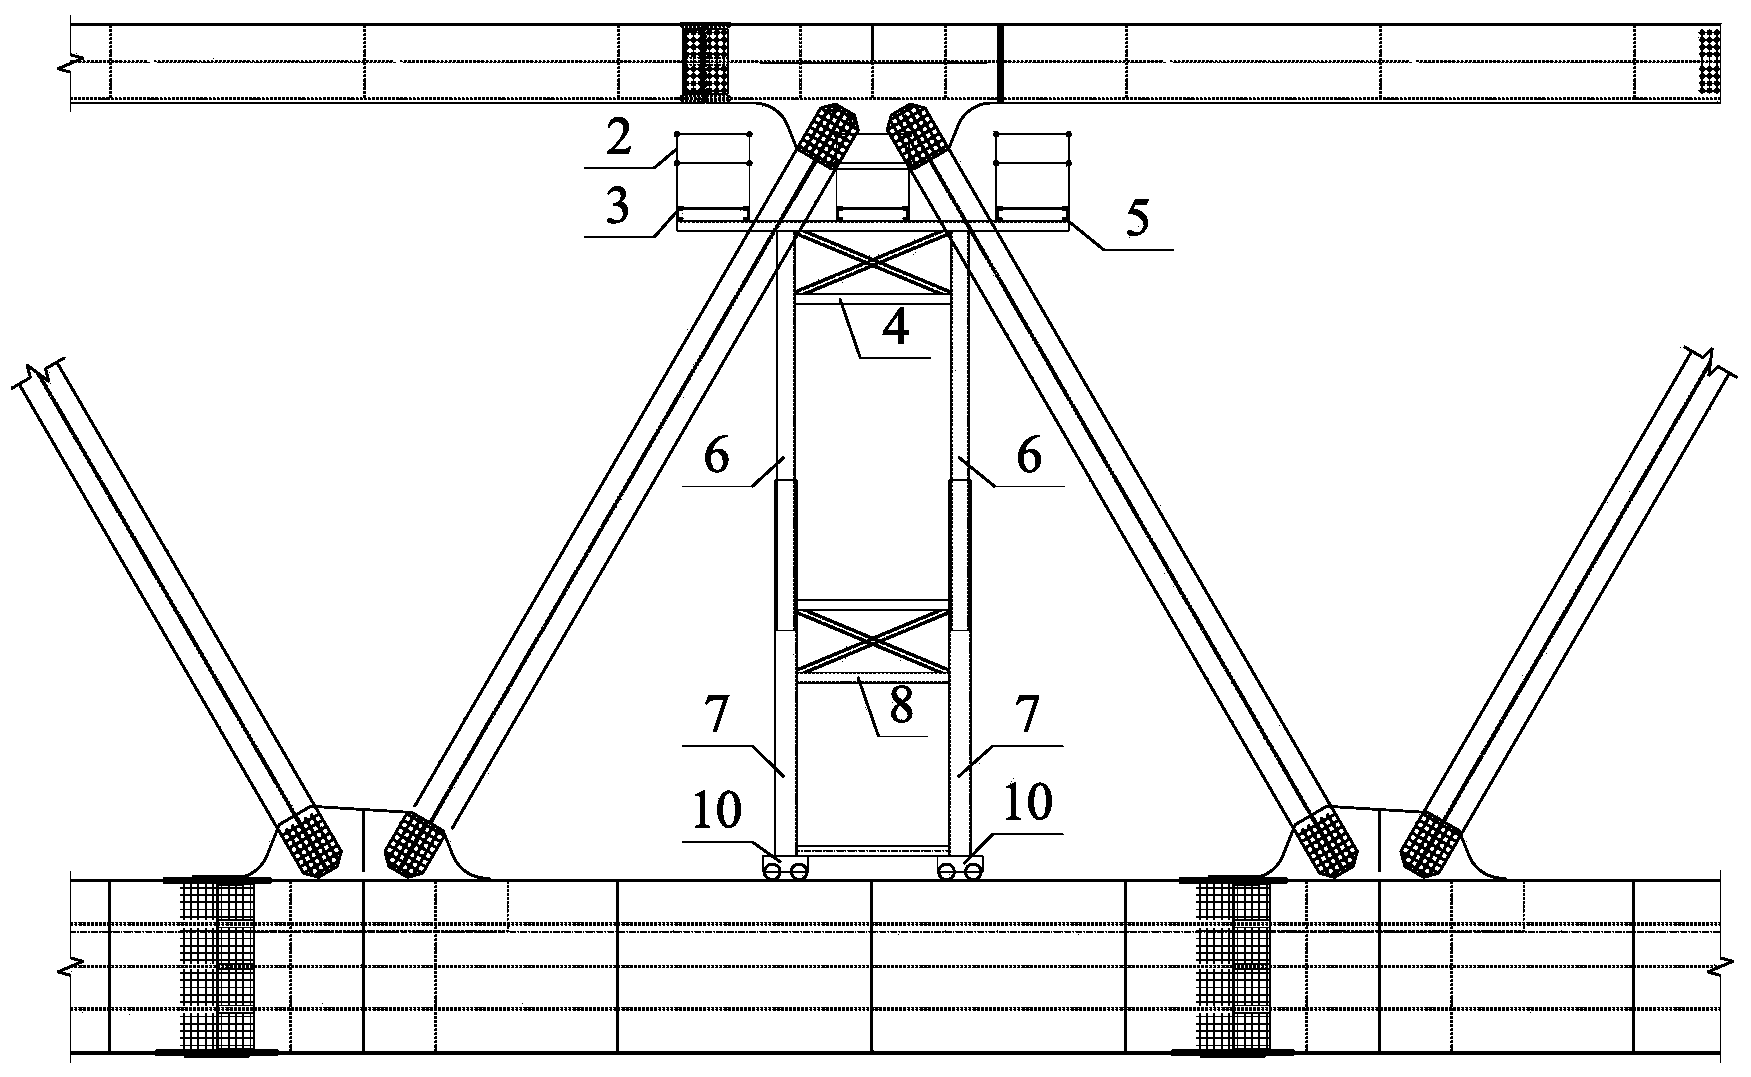 Telescopic steel truss joint splicing device